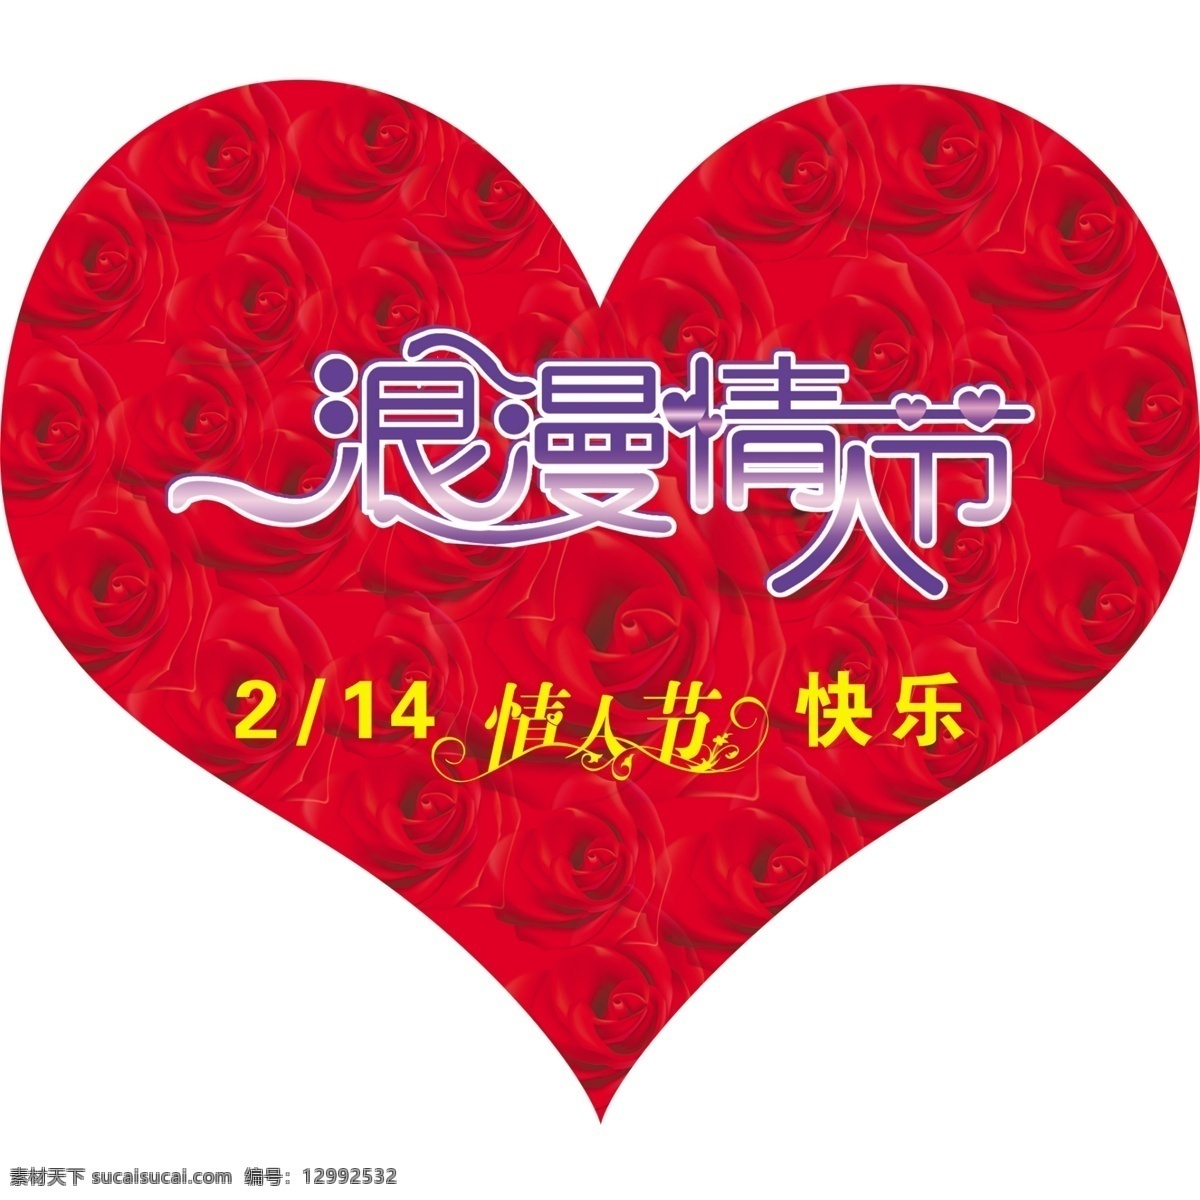 广告设计模板 红玫瑰 浪漫情人节 源文件 浪漫 情人节 模板下载 月 日 快乐 红色的心 艺术 字体 psd源文件